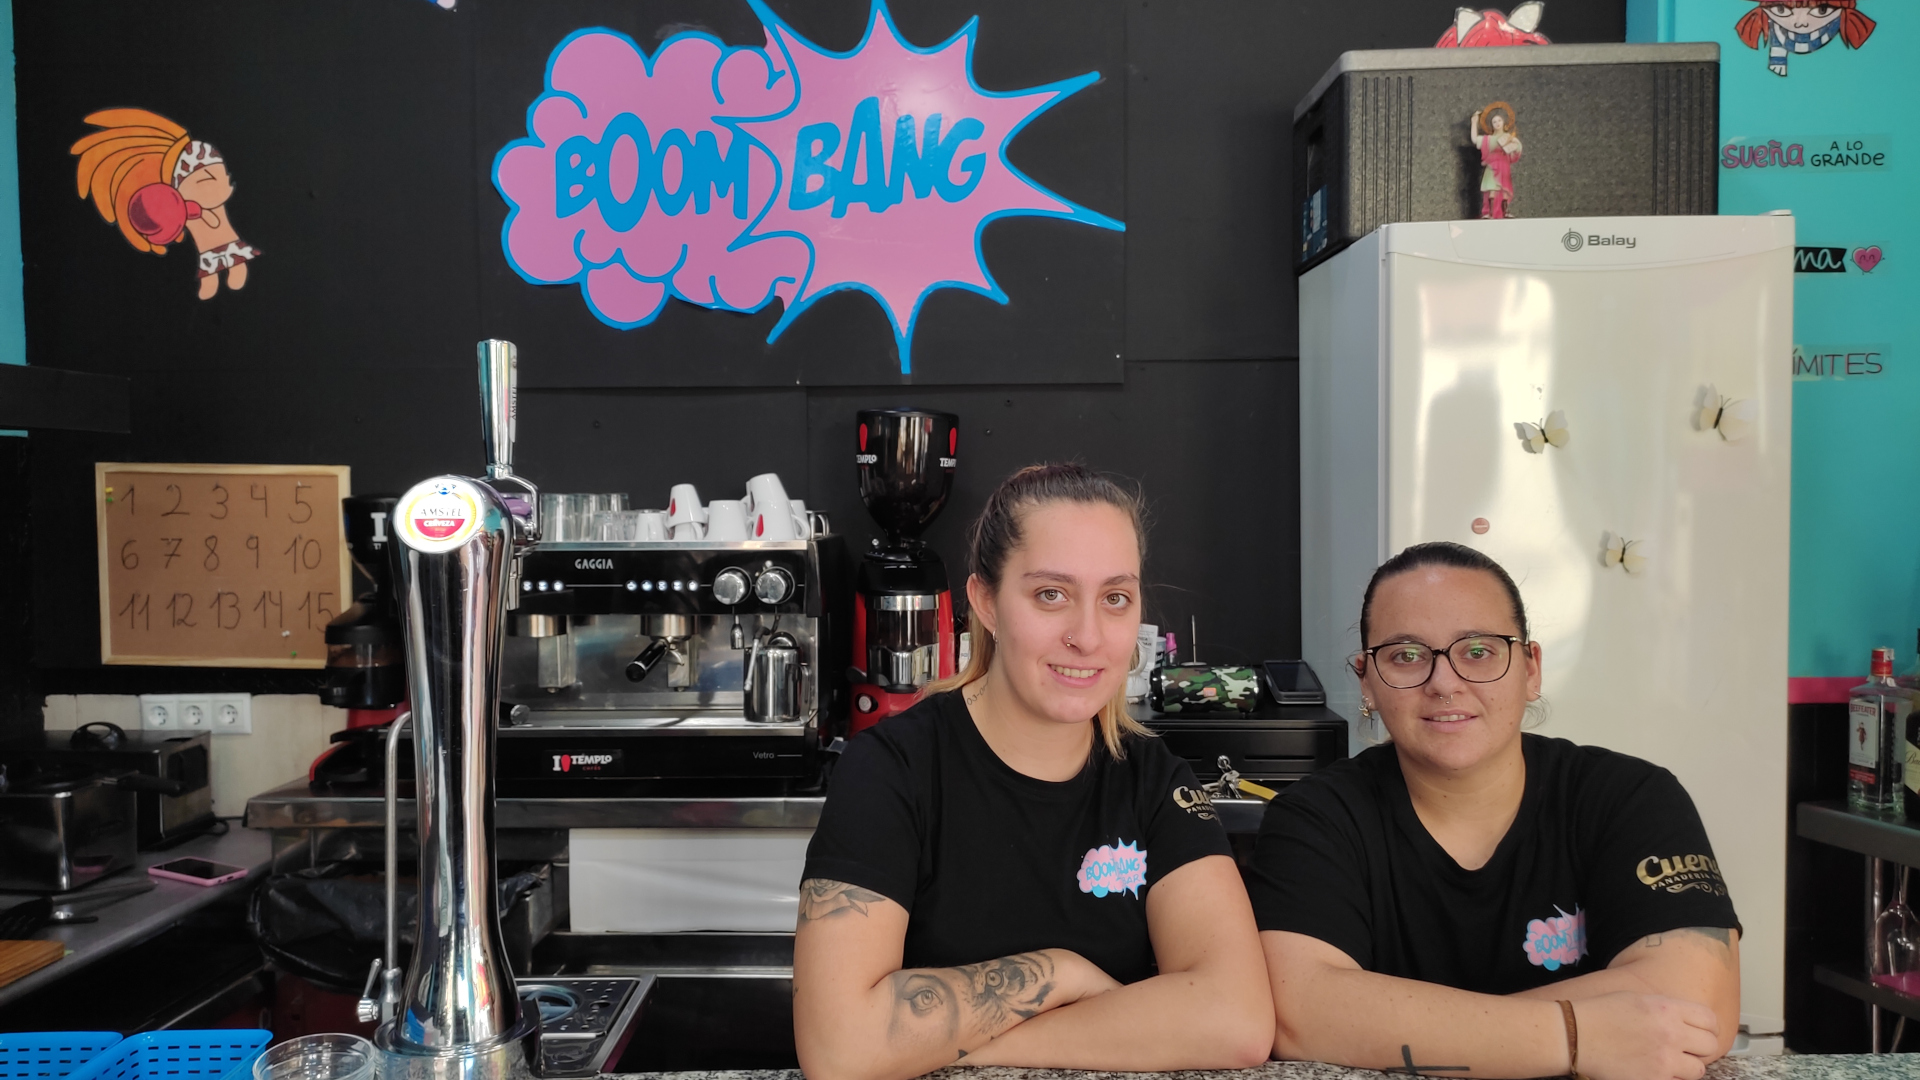 Boom Bang Bar: el nuevo establecimiento de tapas gratis con pizarra gigante para los niños